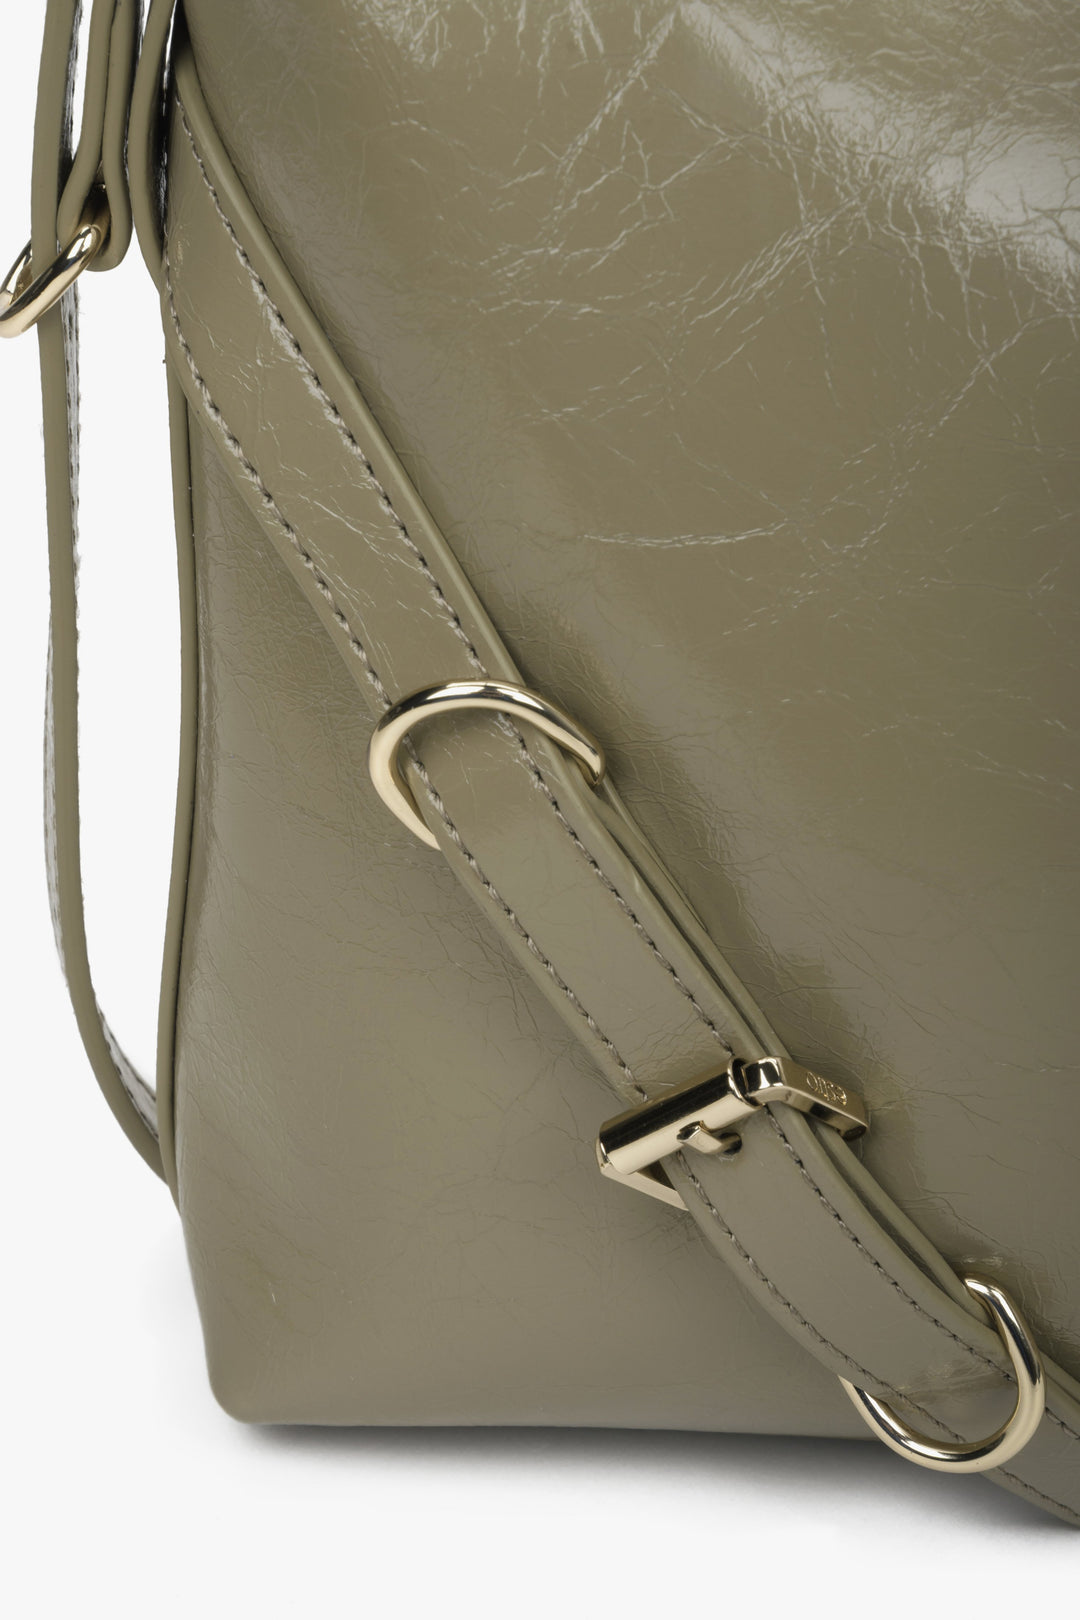 Women's olive Estro leather shoulder bag - close-up on the detail.